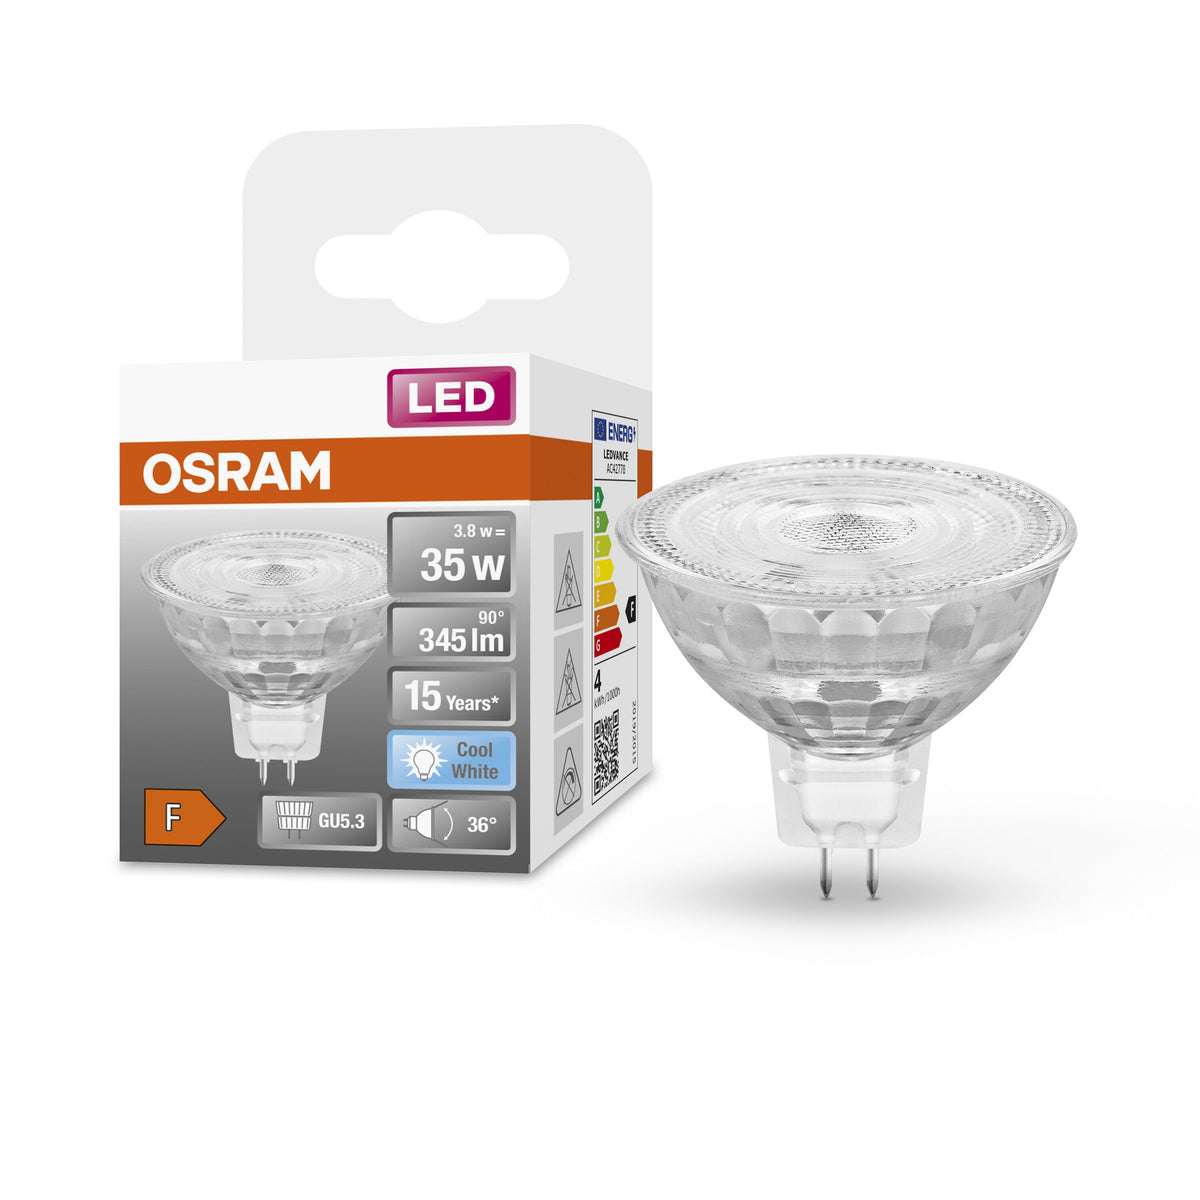 Lampada con riflettore LED OSRAM MR16 con attacco GU5.3, bianco freddo (4000K), spot in vetro, 3,80 W, ricambio per lampada con riflettore da 35 W, LED STAR MR16 12 V